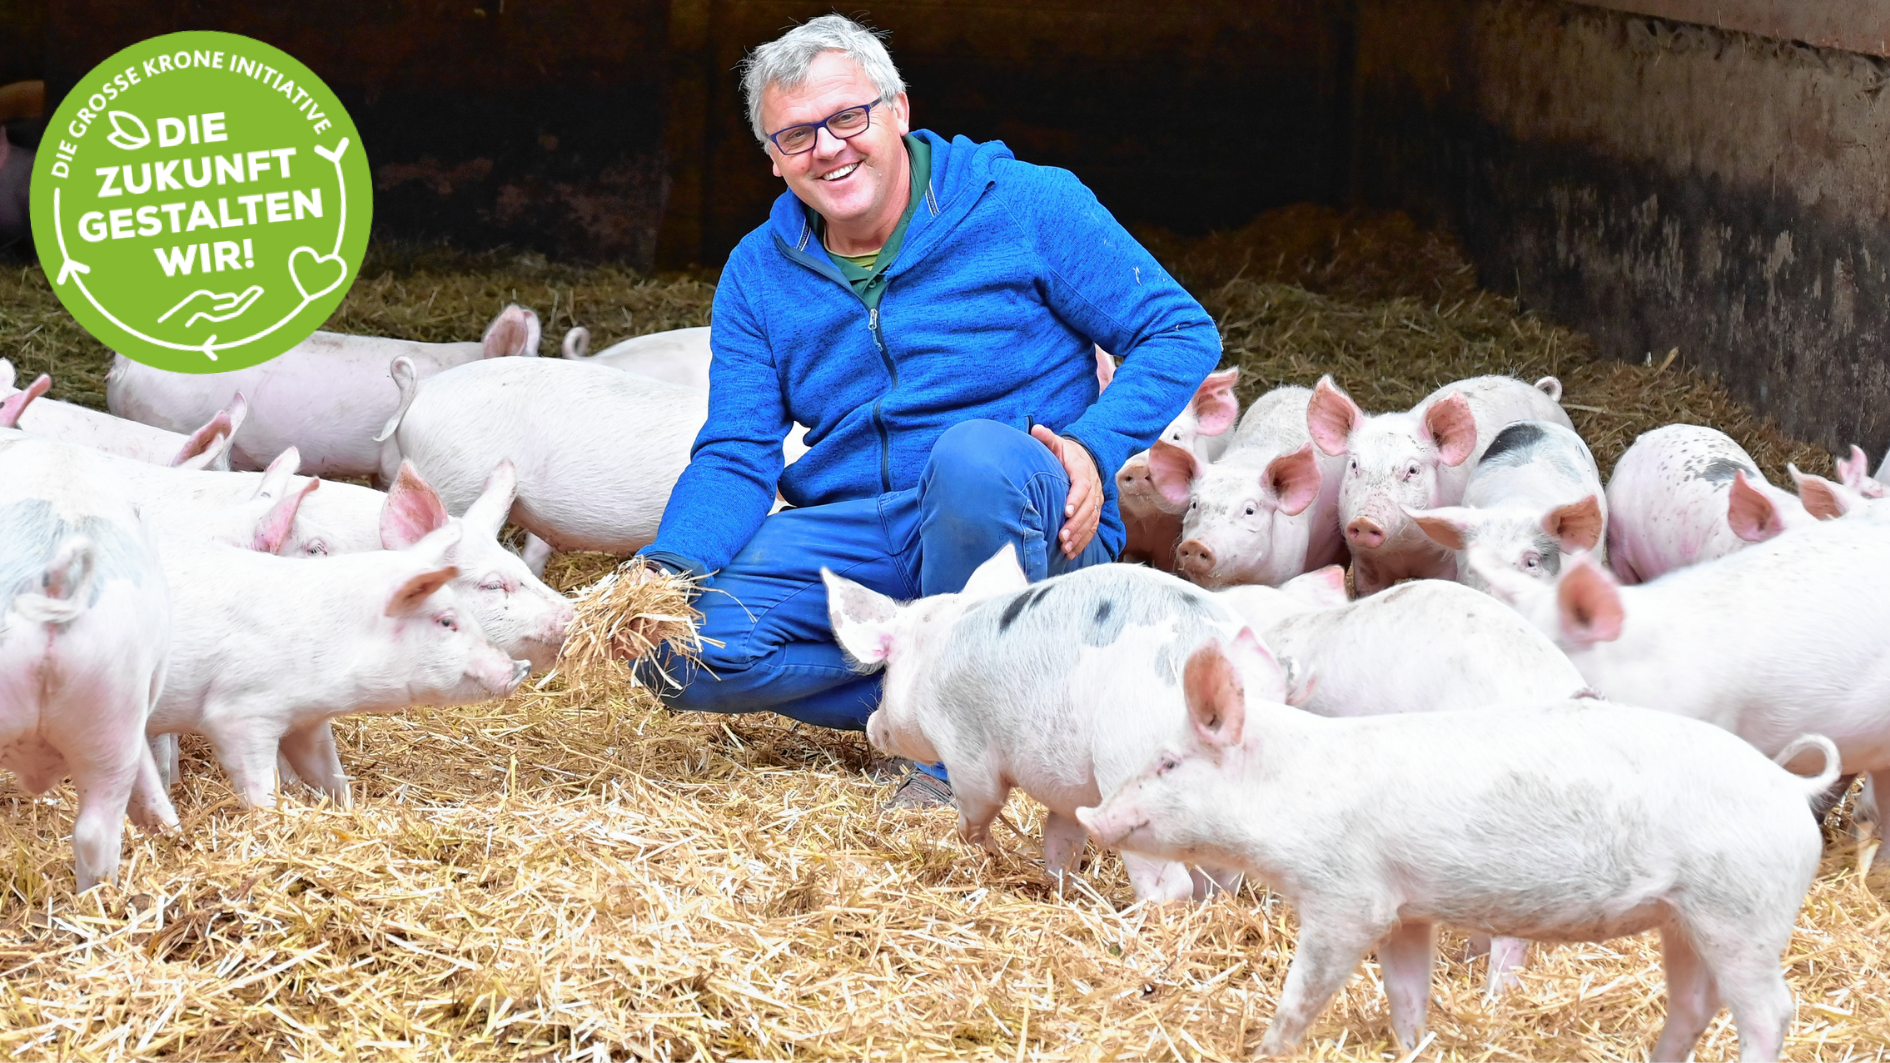 Johannes Tomic hat sich mit der Psyche des Schweines auseinandergesetzt und den Tieren ein Paradies für Mutterschweine und Aufzucht geschaffen. (Bild: Evelyn Hronek Kamerawerk)